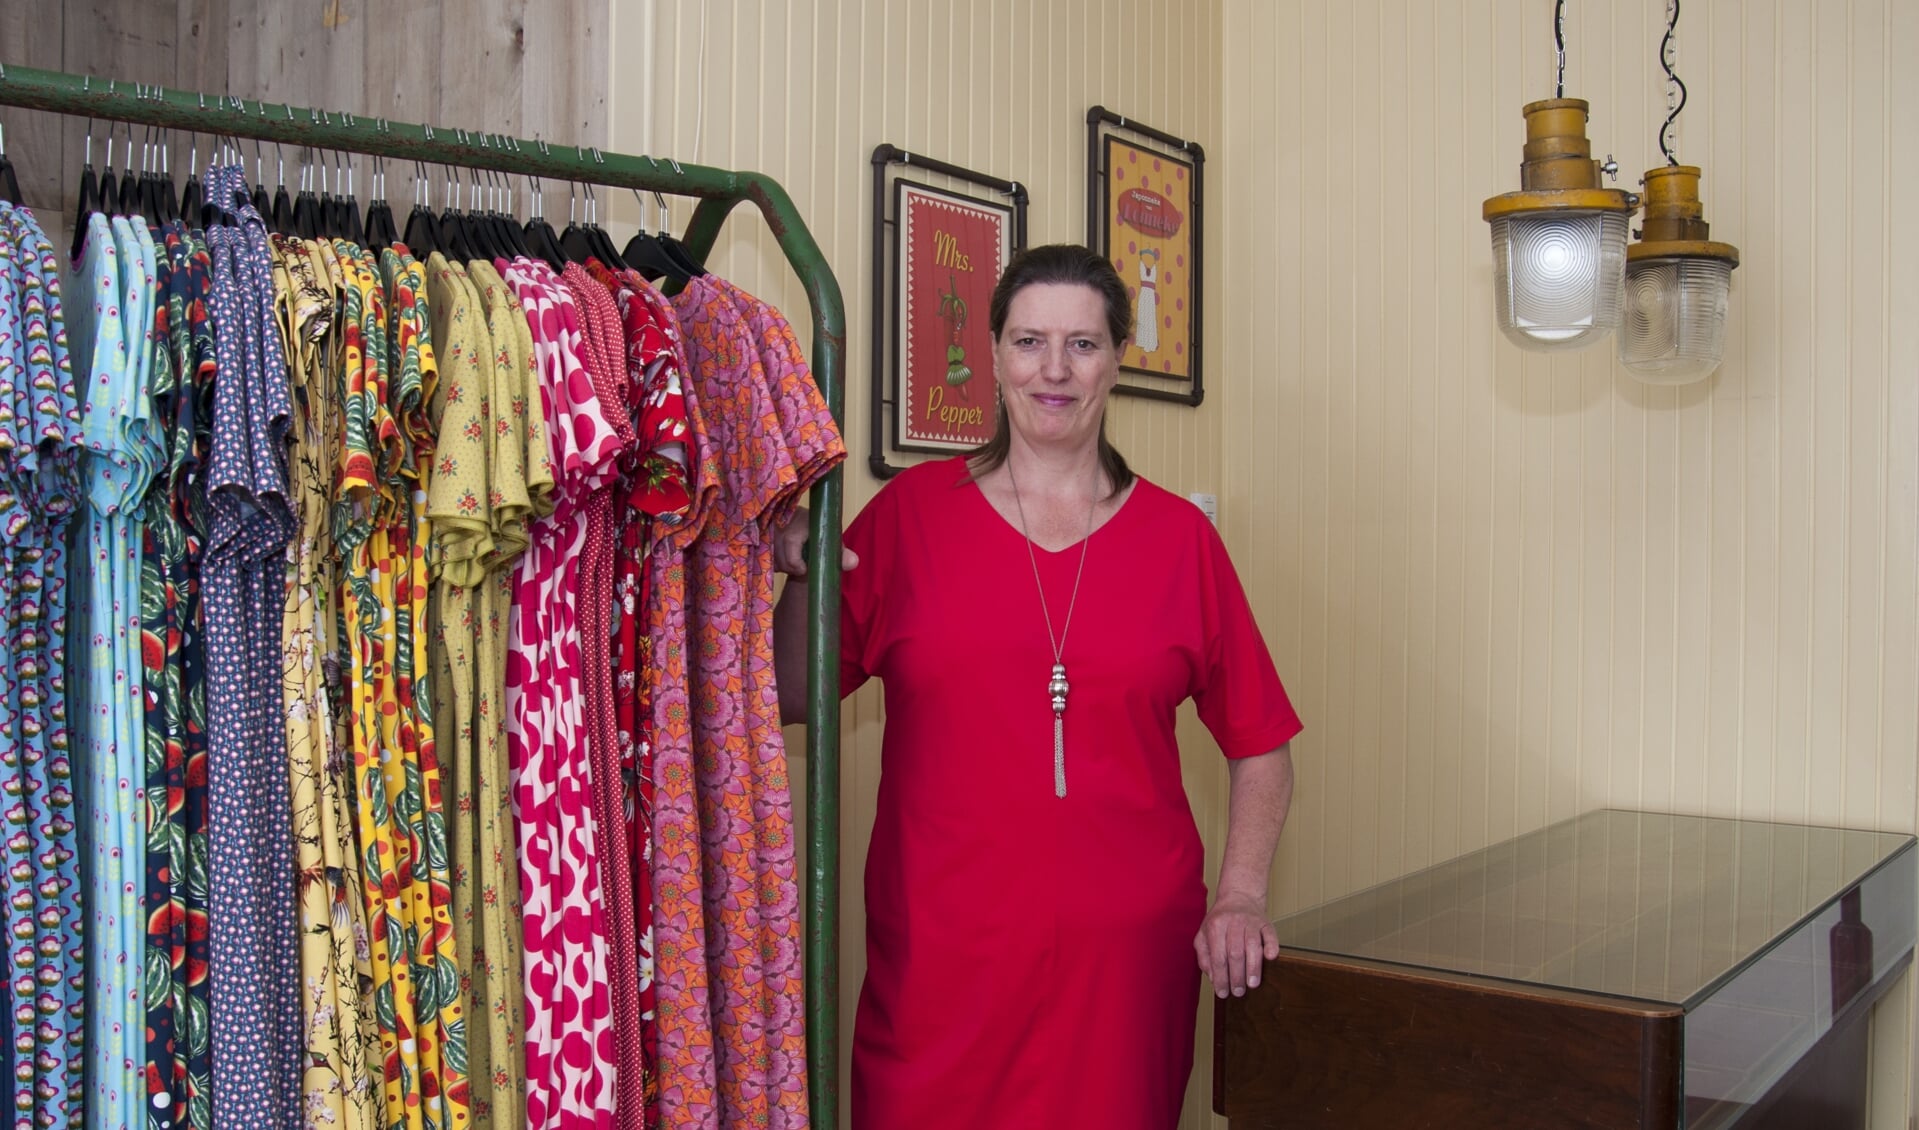 Ilona Strelitski is trots op haar eigen winkel. Foto: Marion Verhaaf